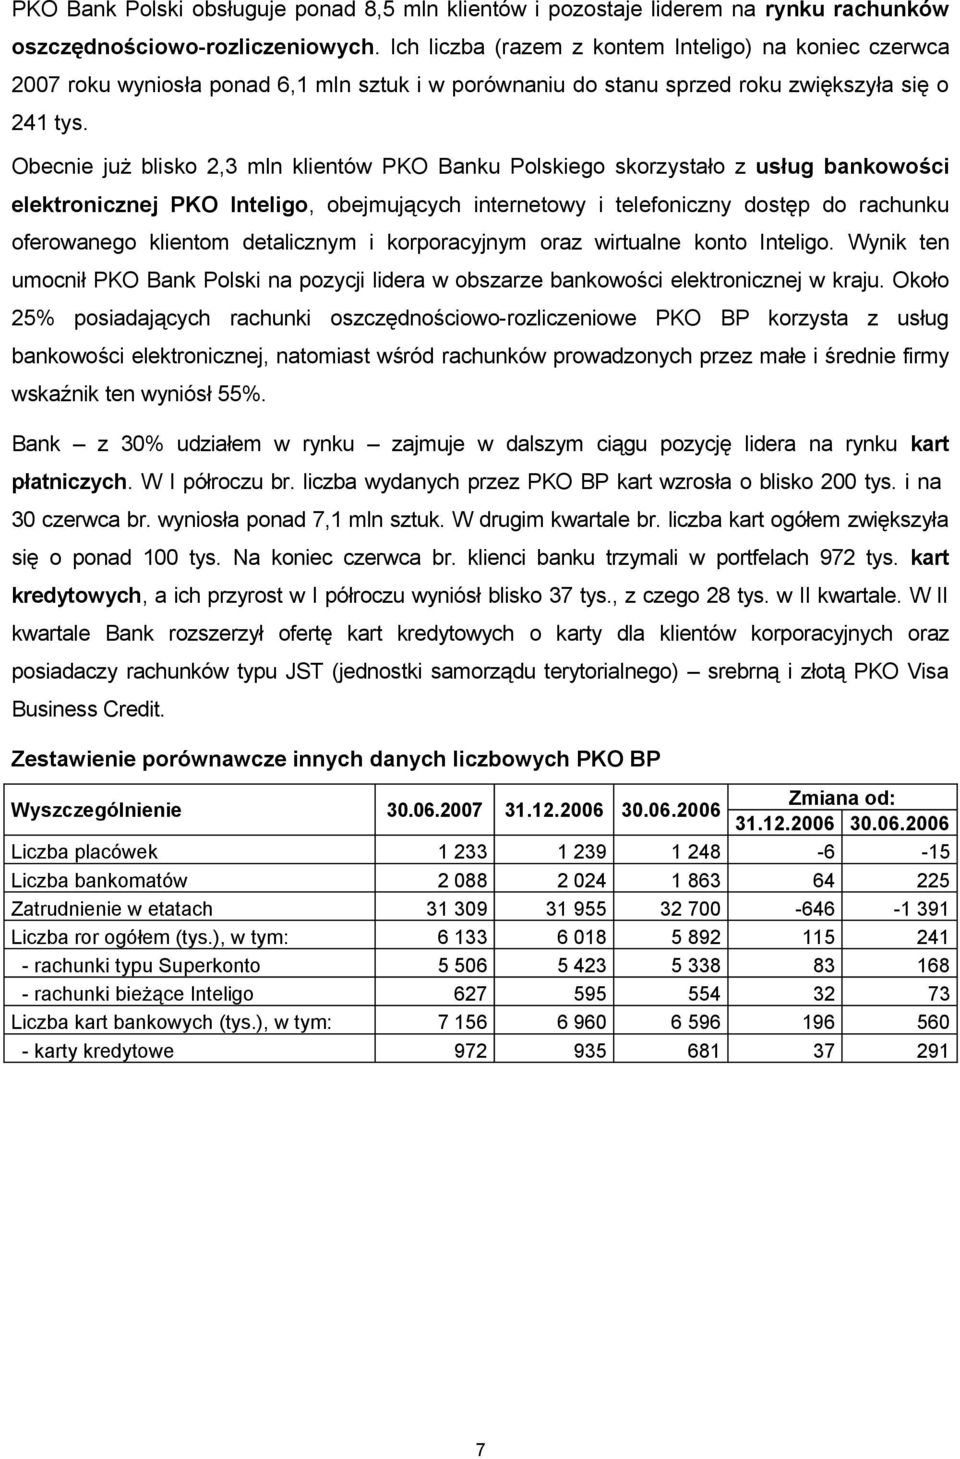 Obecnie już blisko 2,3 mln klientów PKO Banku Polskiego skorzystało z usług bankowości elektronicznej PKO Inteligo, obejmujących internetowy i telefoniczny dostęp do rachunku oferowanego klientom